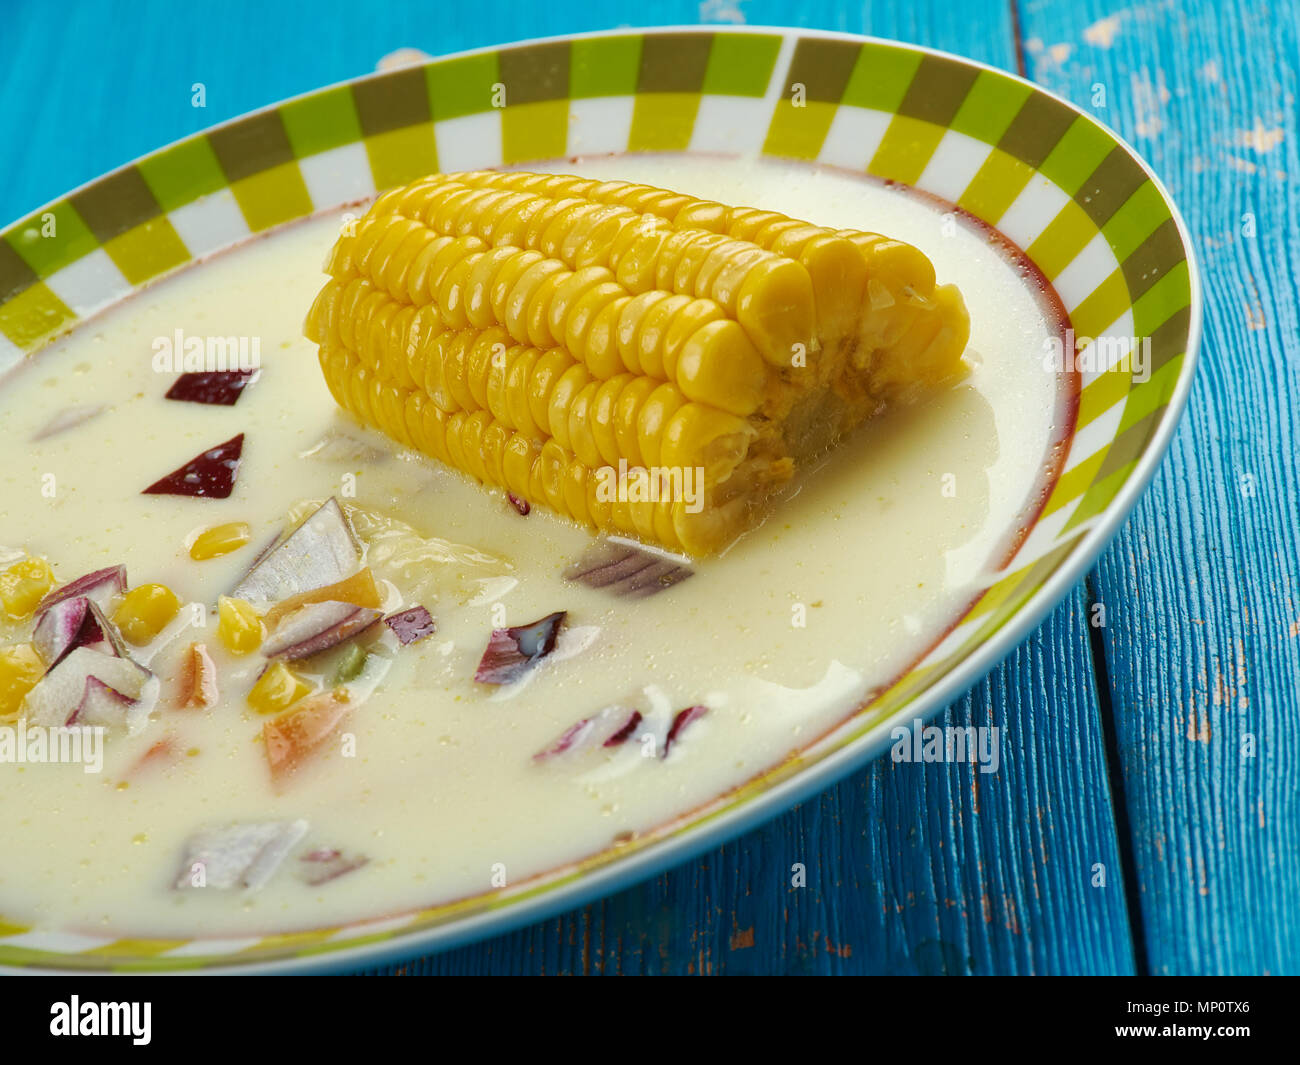 Die jamaikanische Maissuppe - Karibische Styler Suppe Nahaufnahme Stockfoto